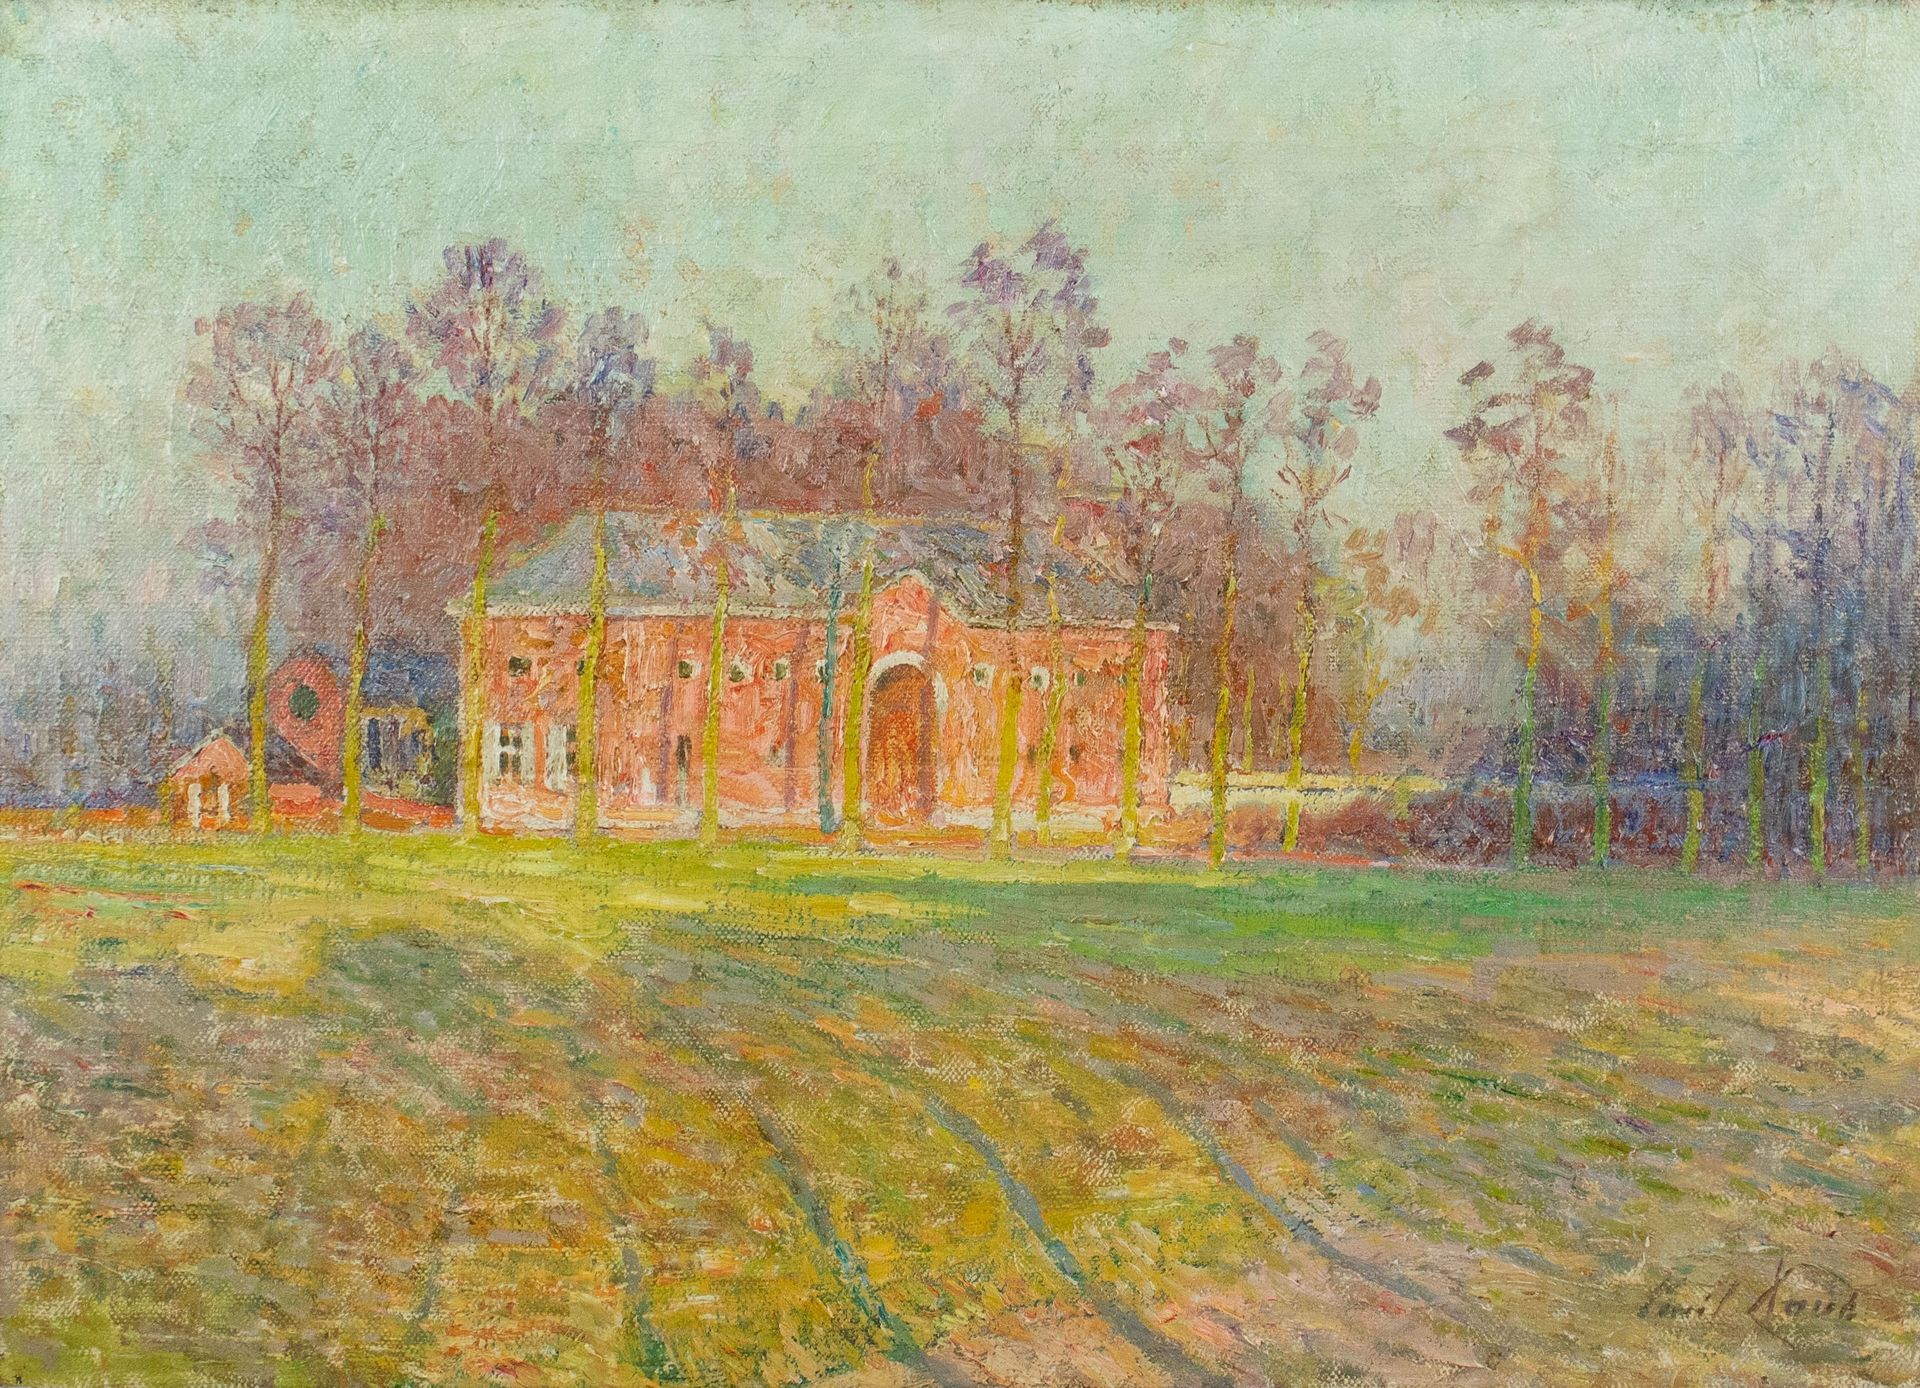 Emile Claus (1849-1924) Ooidonk的城堡农场。布面油画，有签名。Olie op doek, Ooidonk.
43 x 59 cm